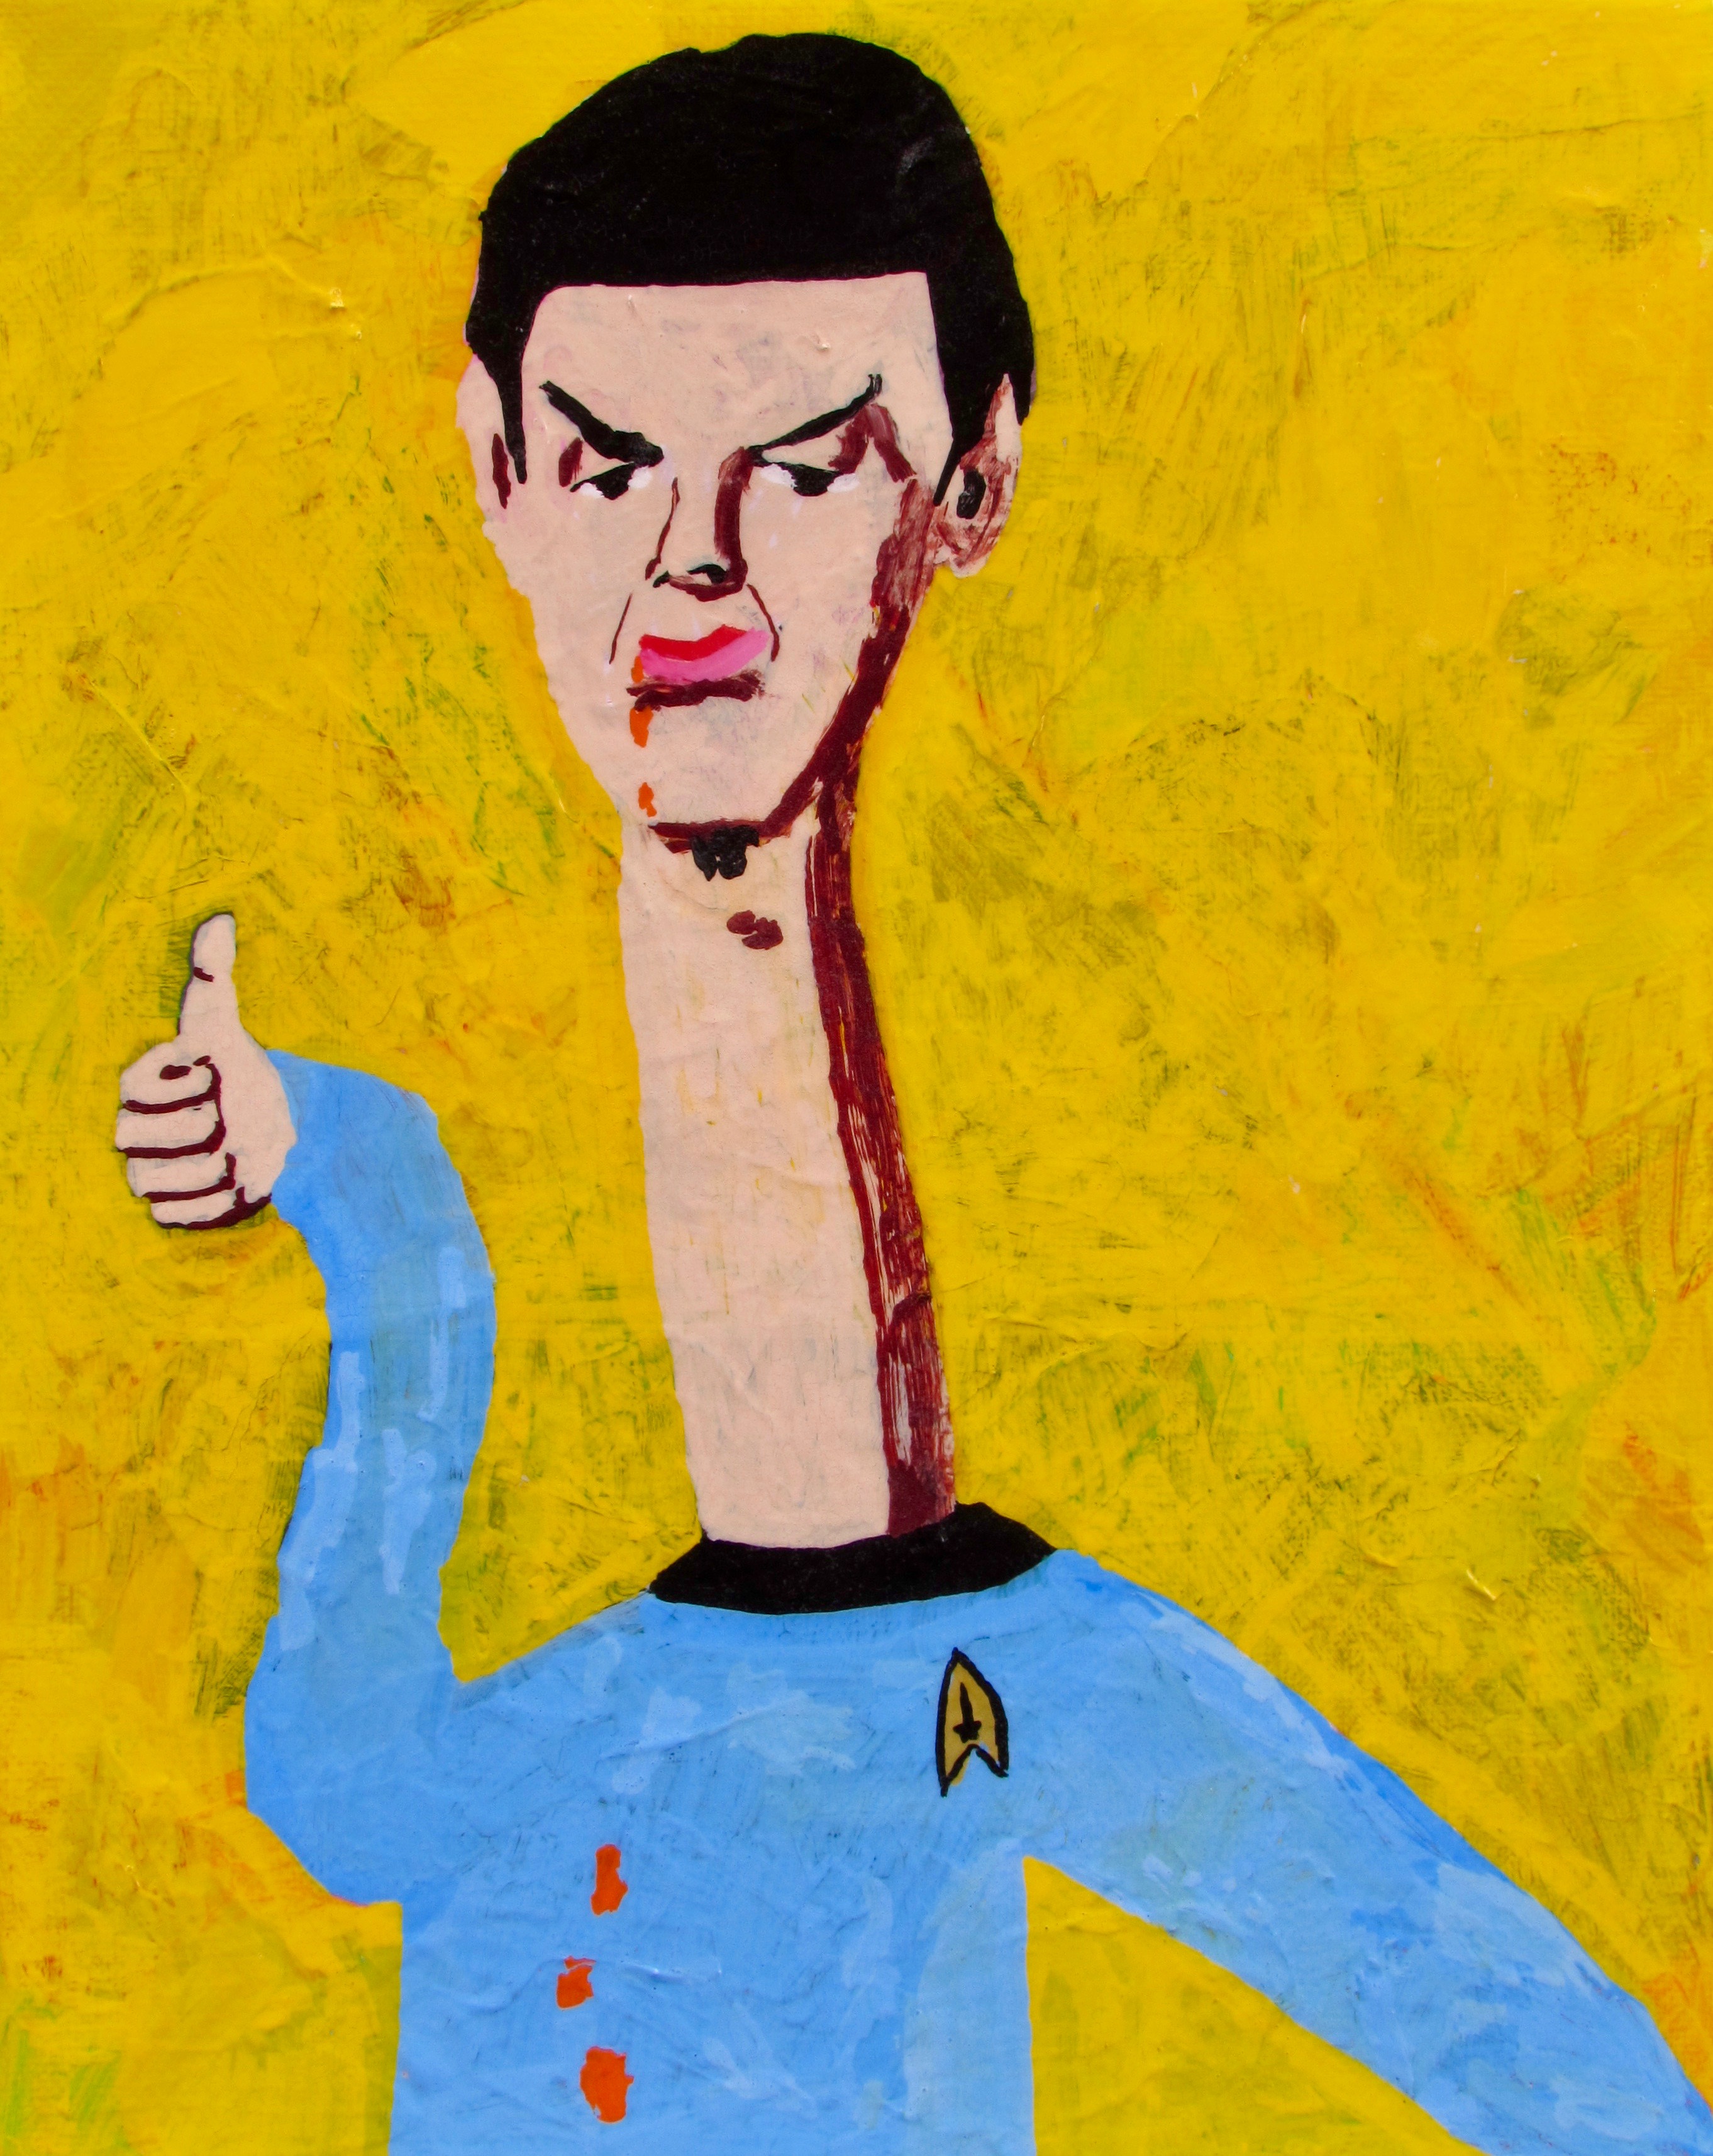 painting of Spock from Star Trek